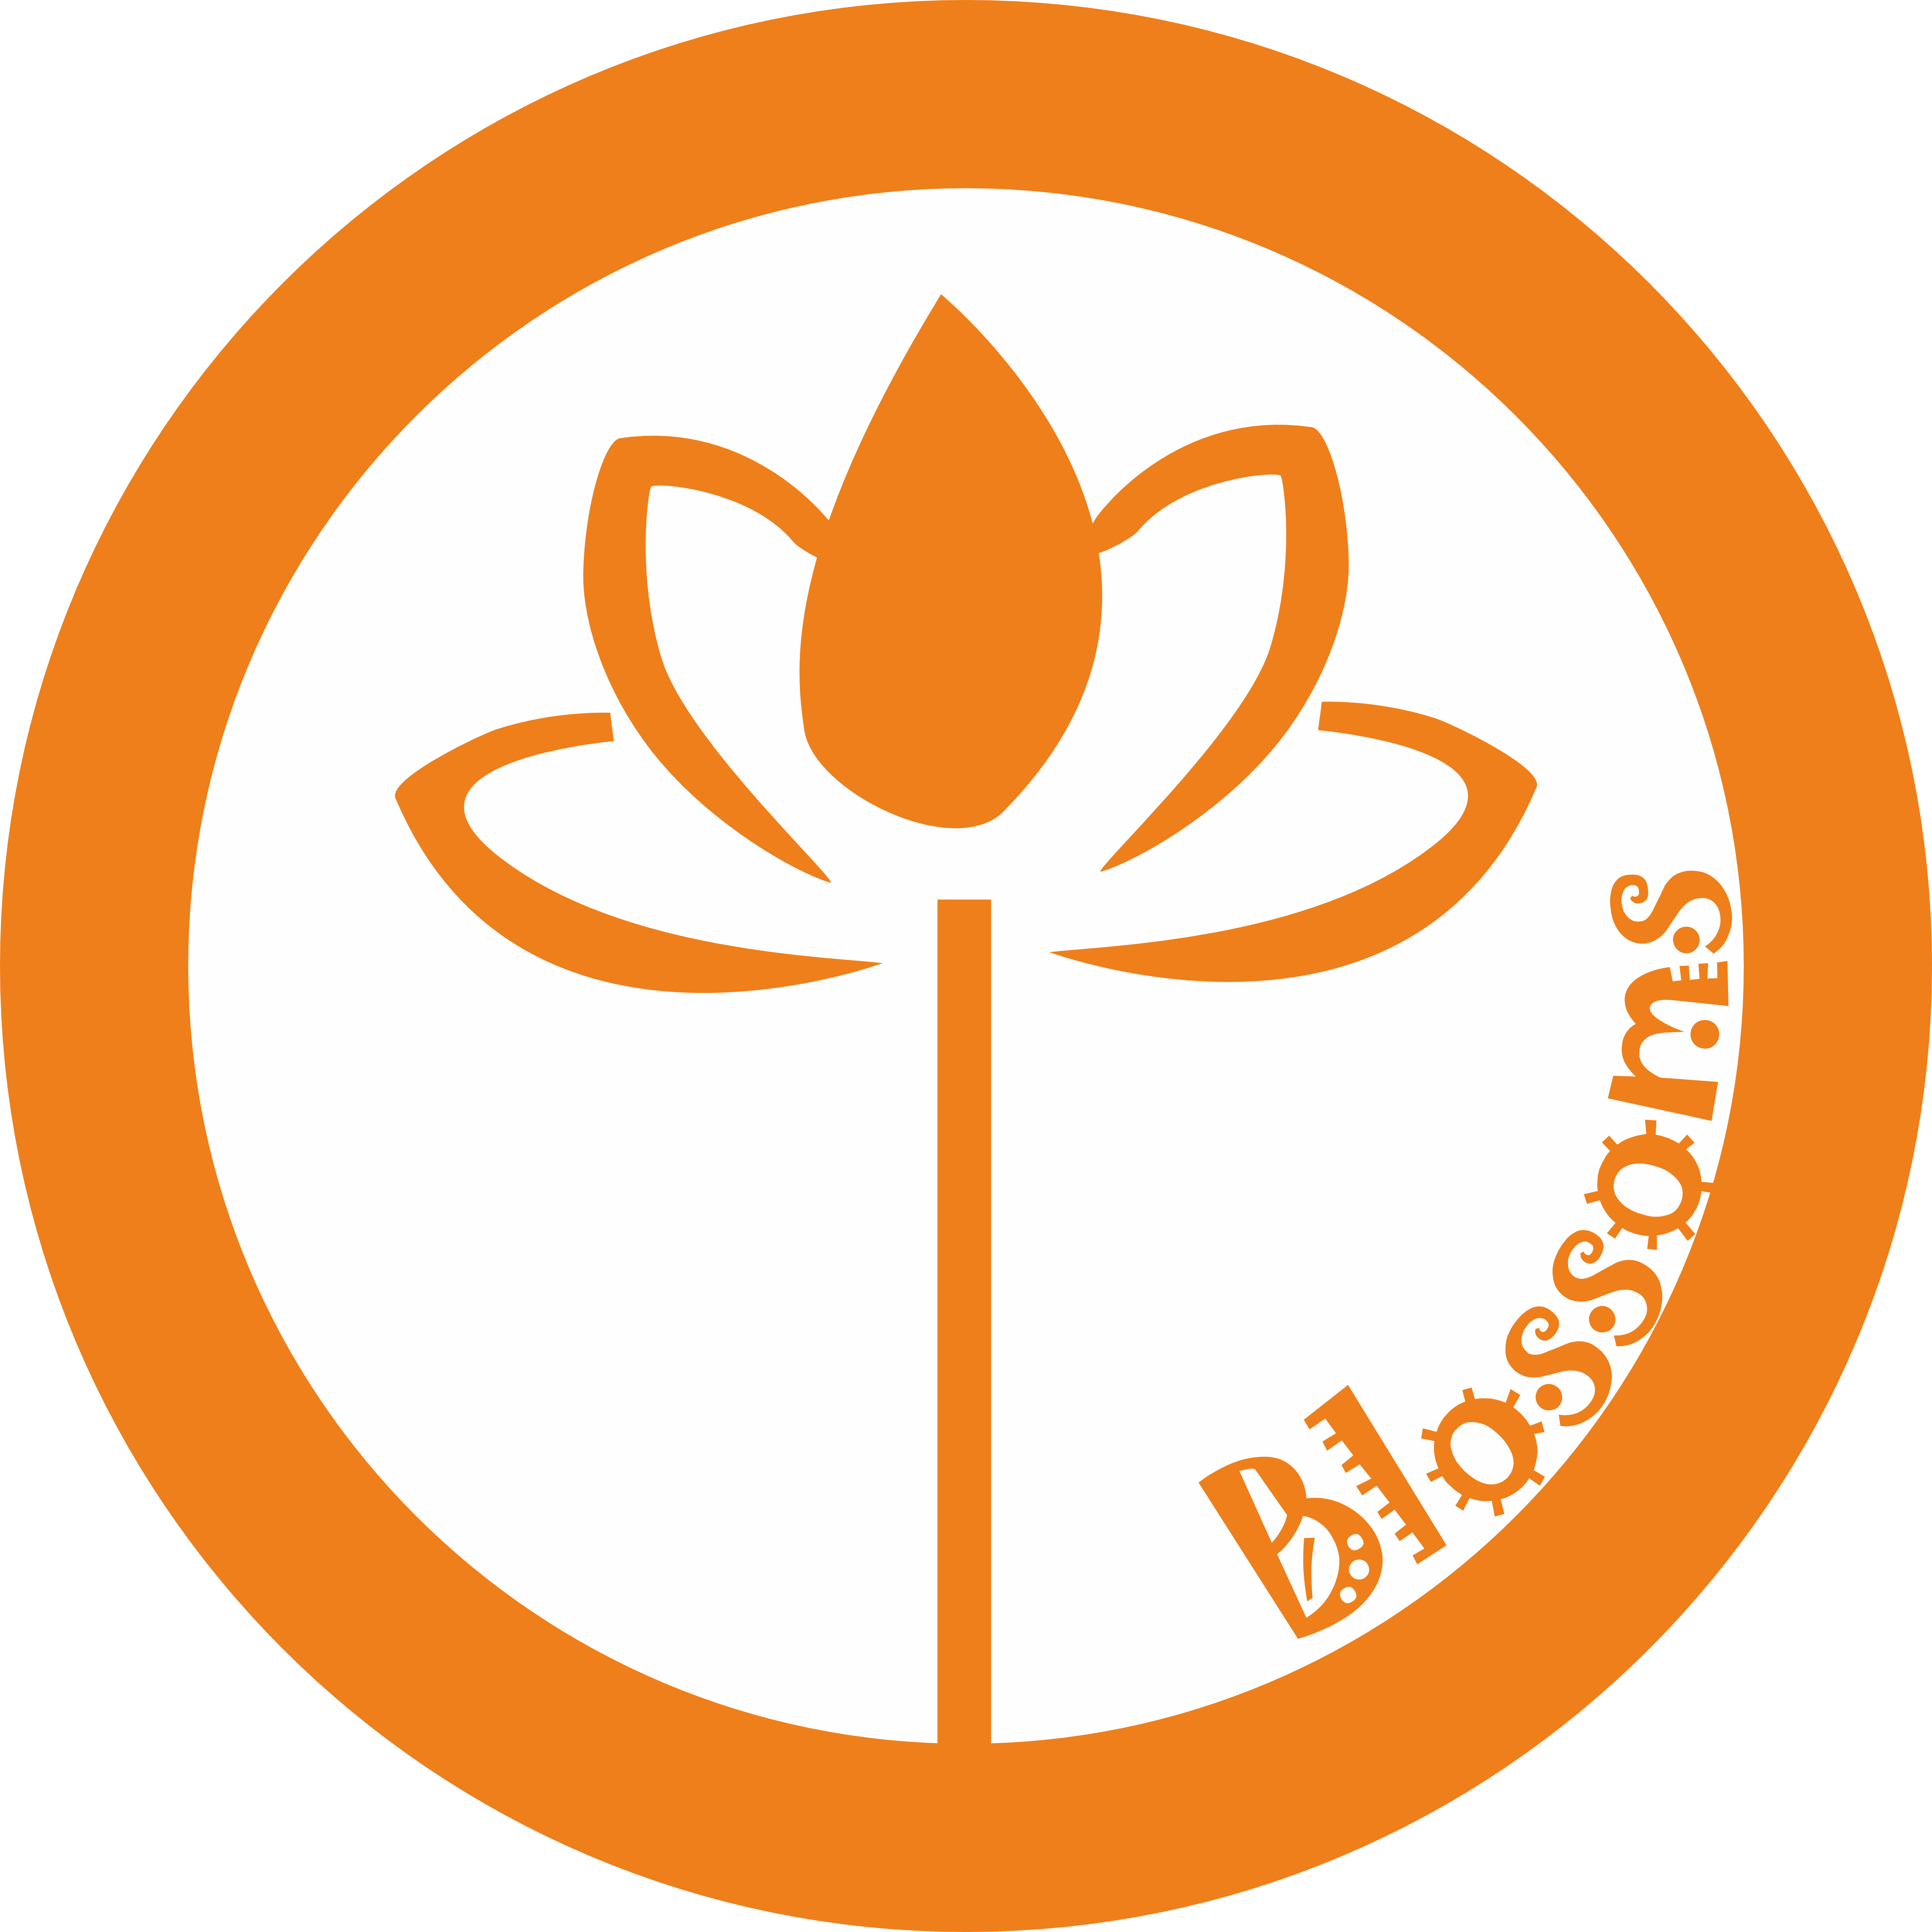 Blossoms Logo